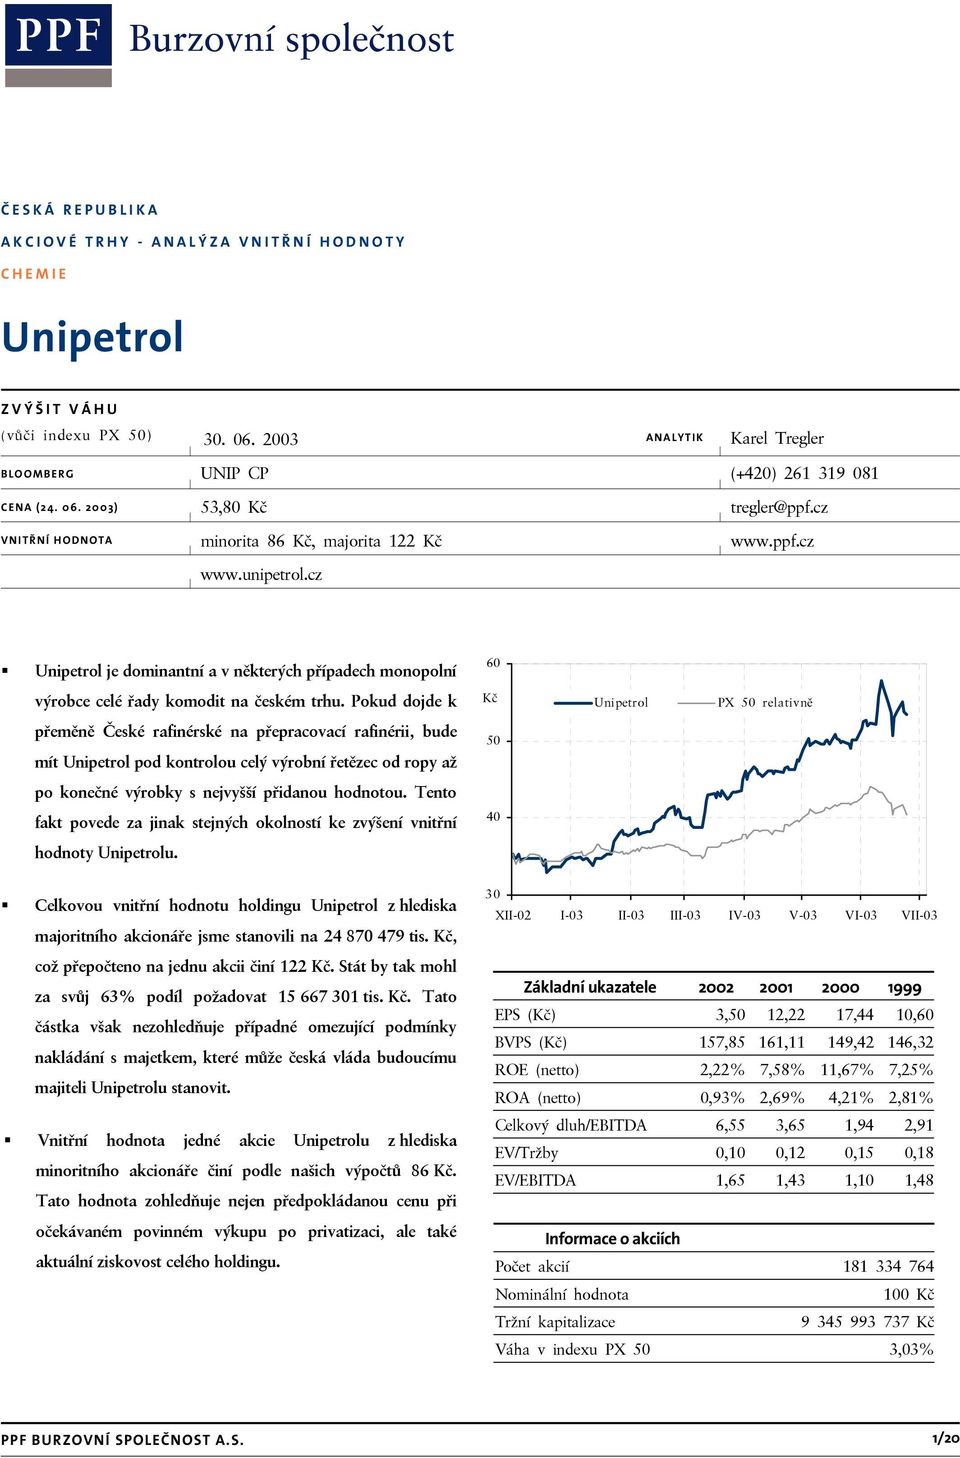 Pokud dojde k přeměně České rafinérské na přepracovací rafinérii, bude mít Unipetrol pod kontrolou celý výrobní řetězec od ropy až po konečné výrobky s nejvyšší přidanou hodnotou.